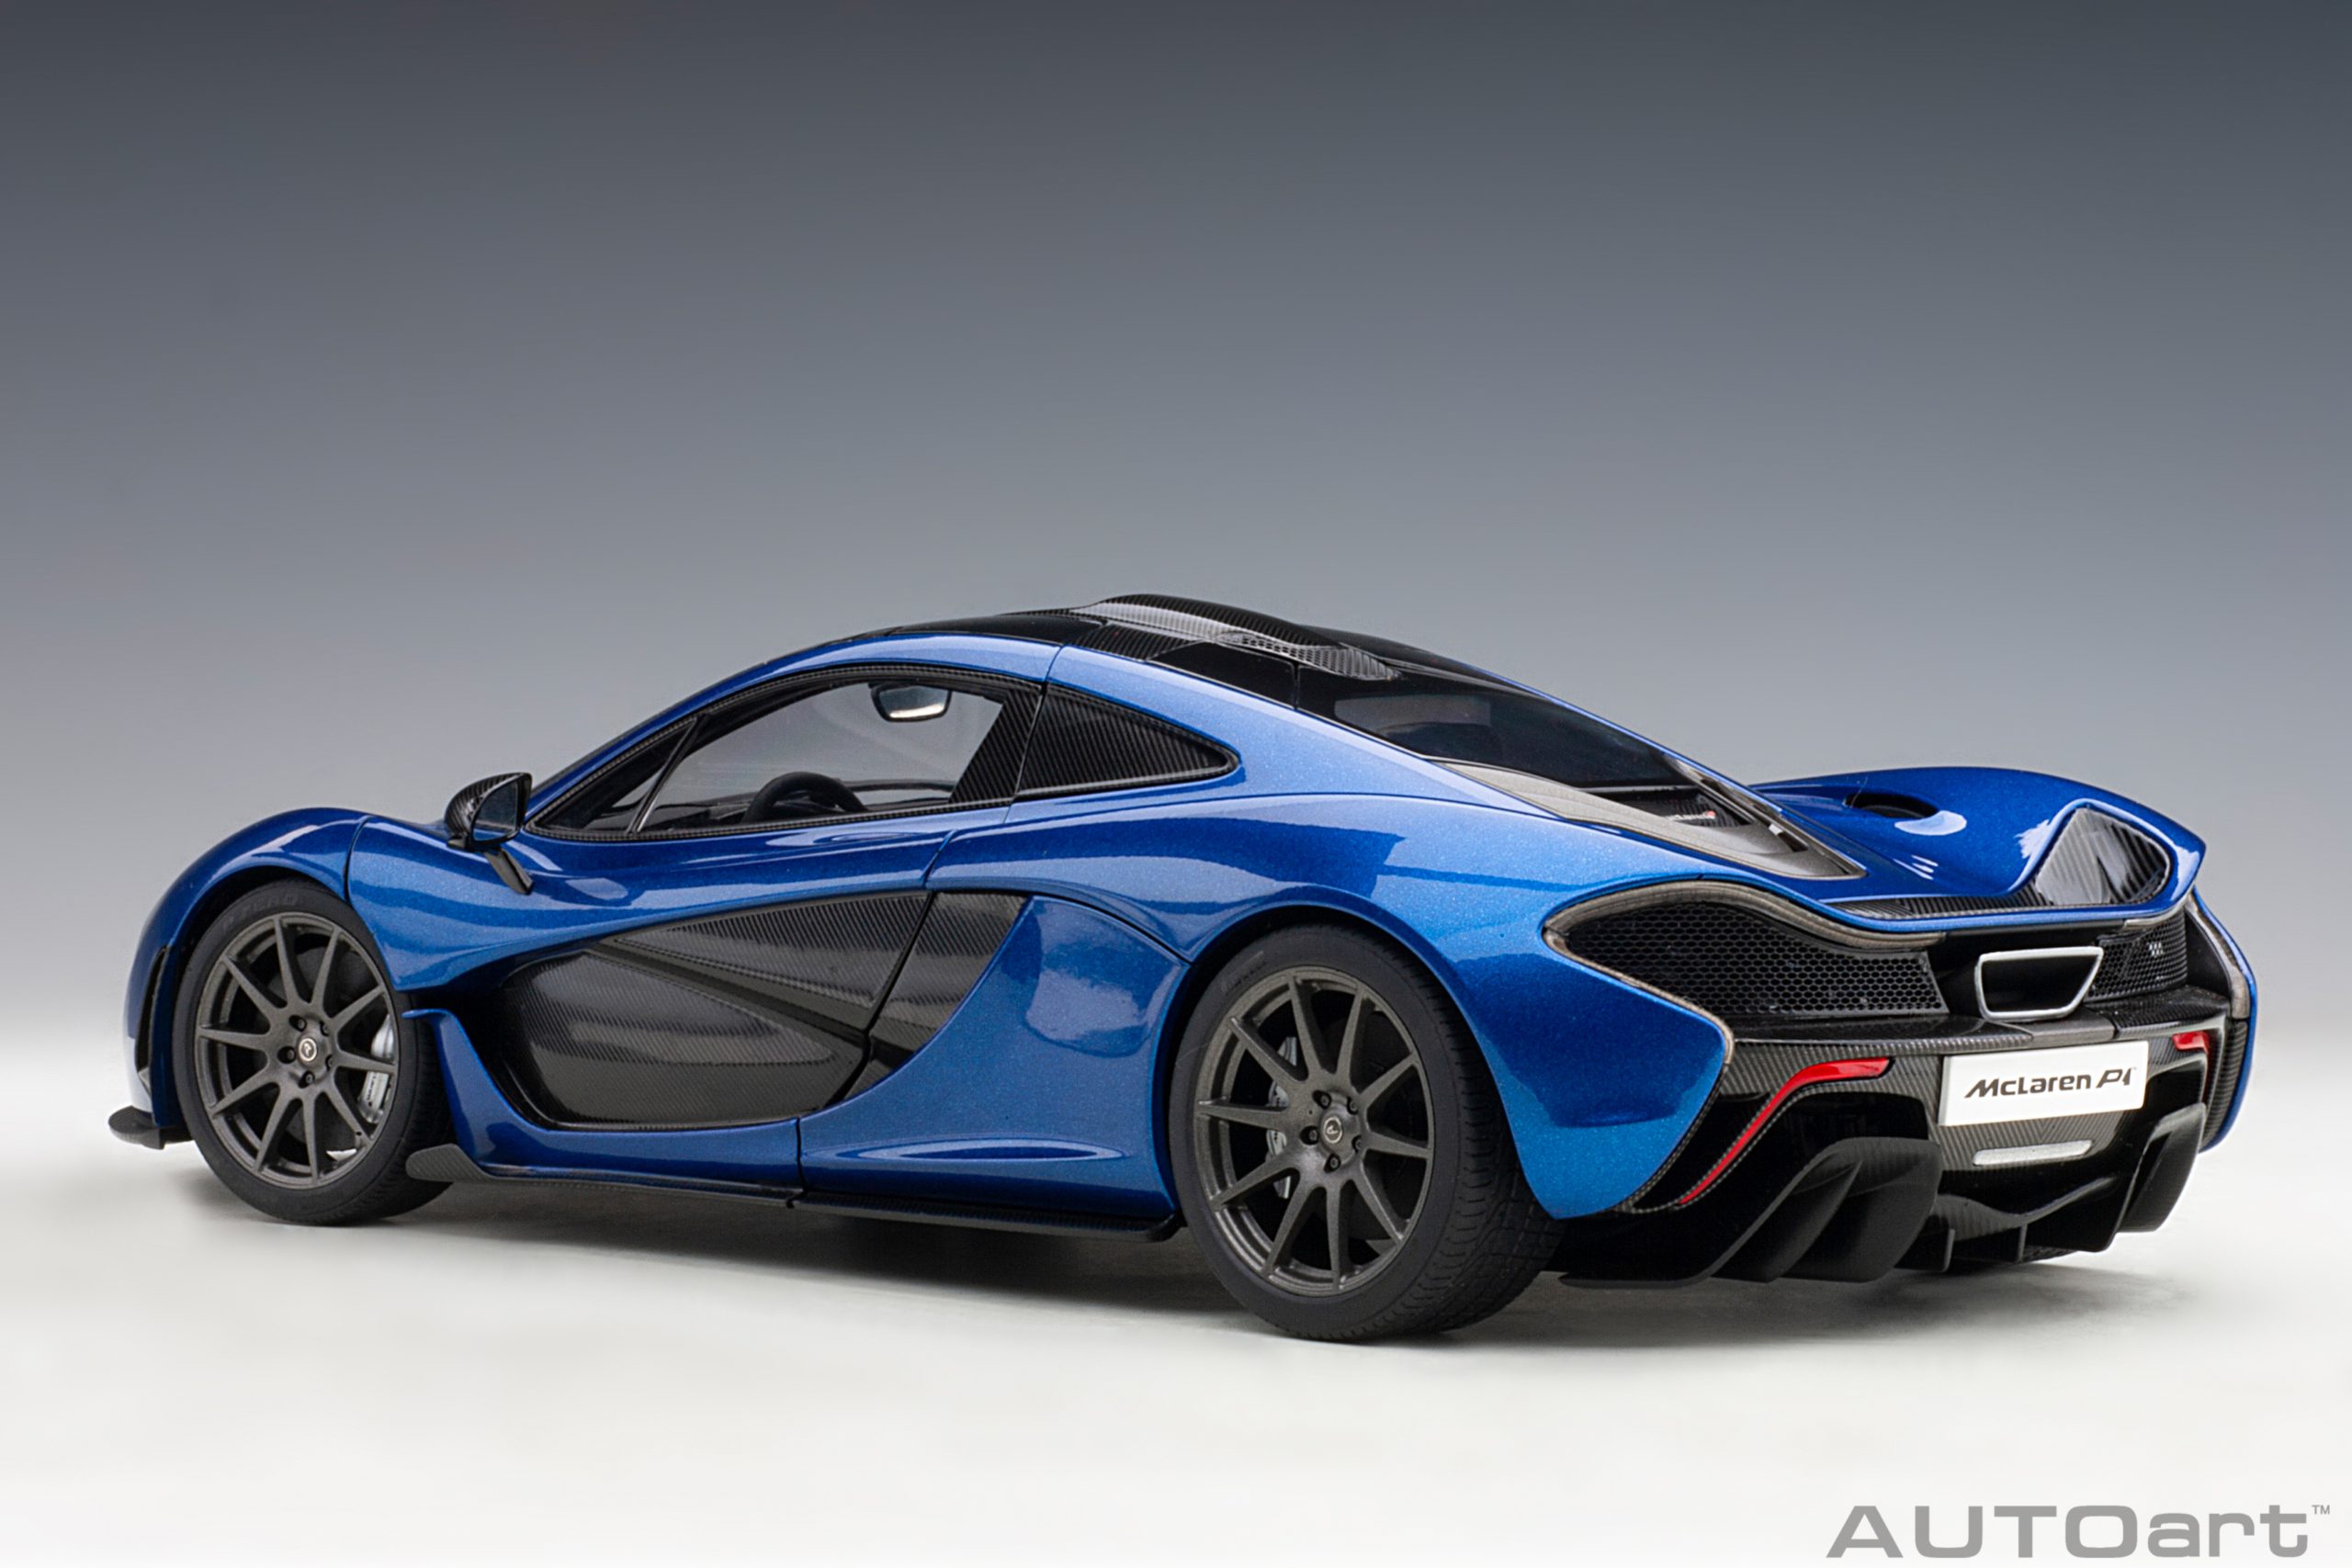 McLaren P1 (Azure Blue) | AUTOart